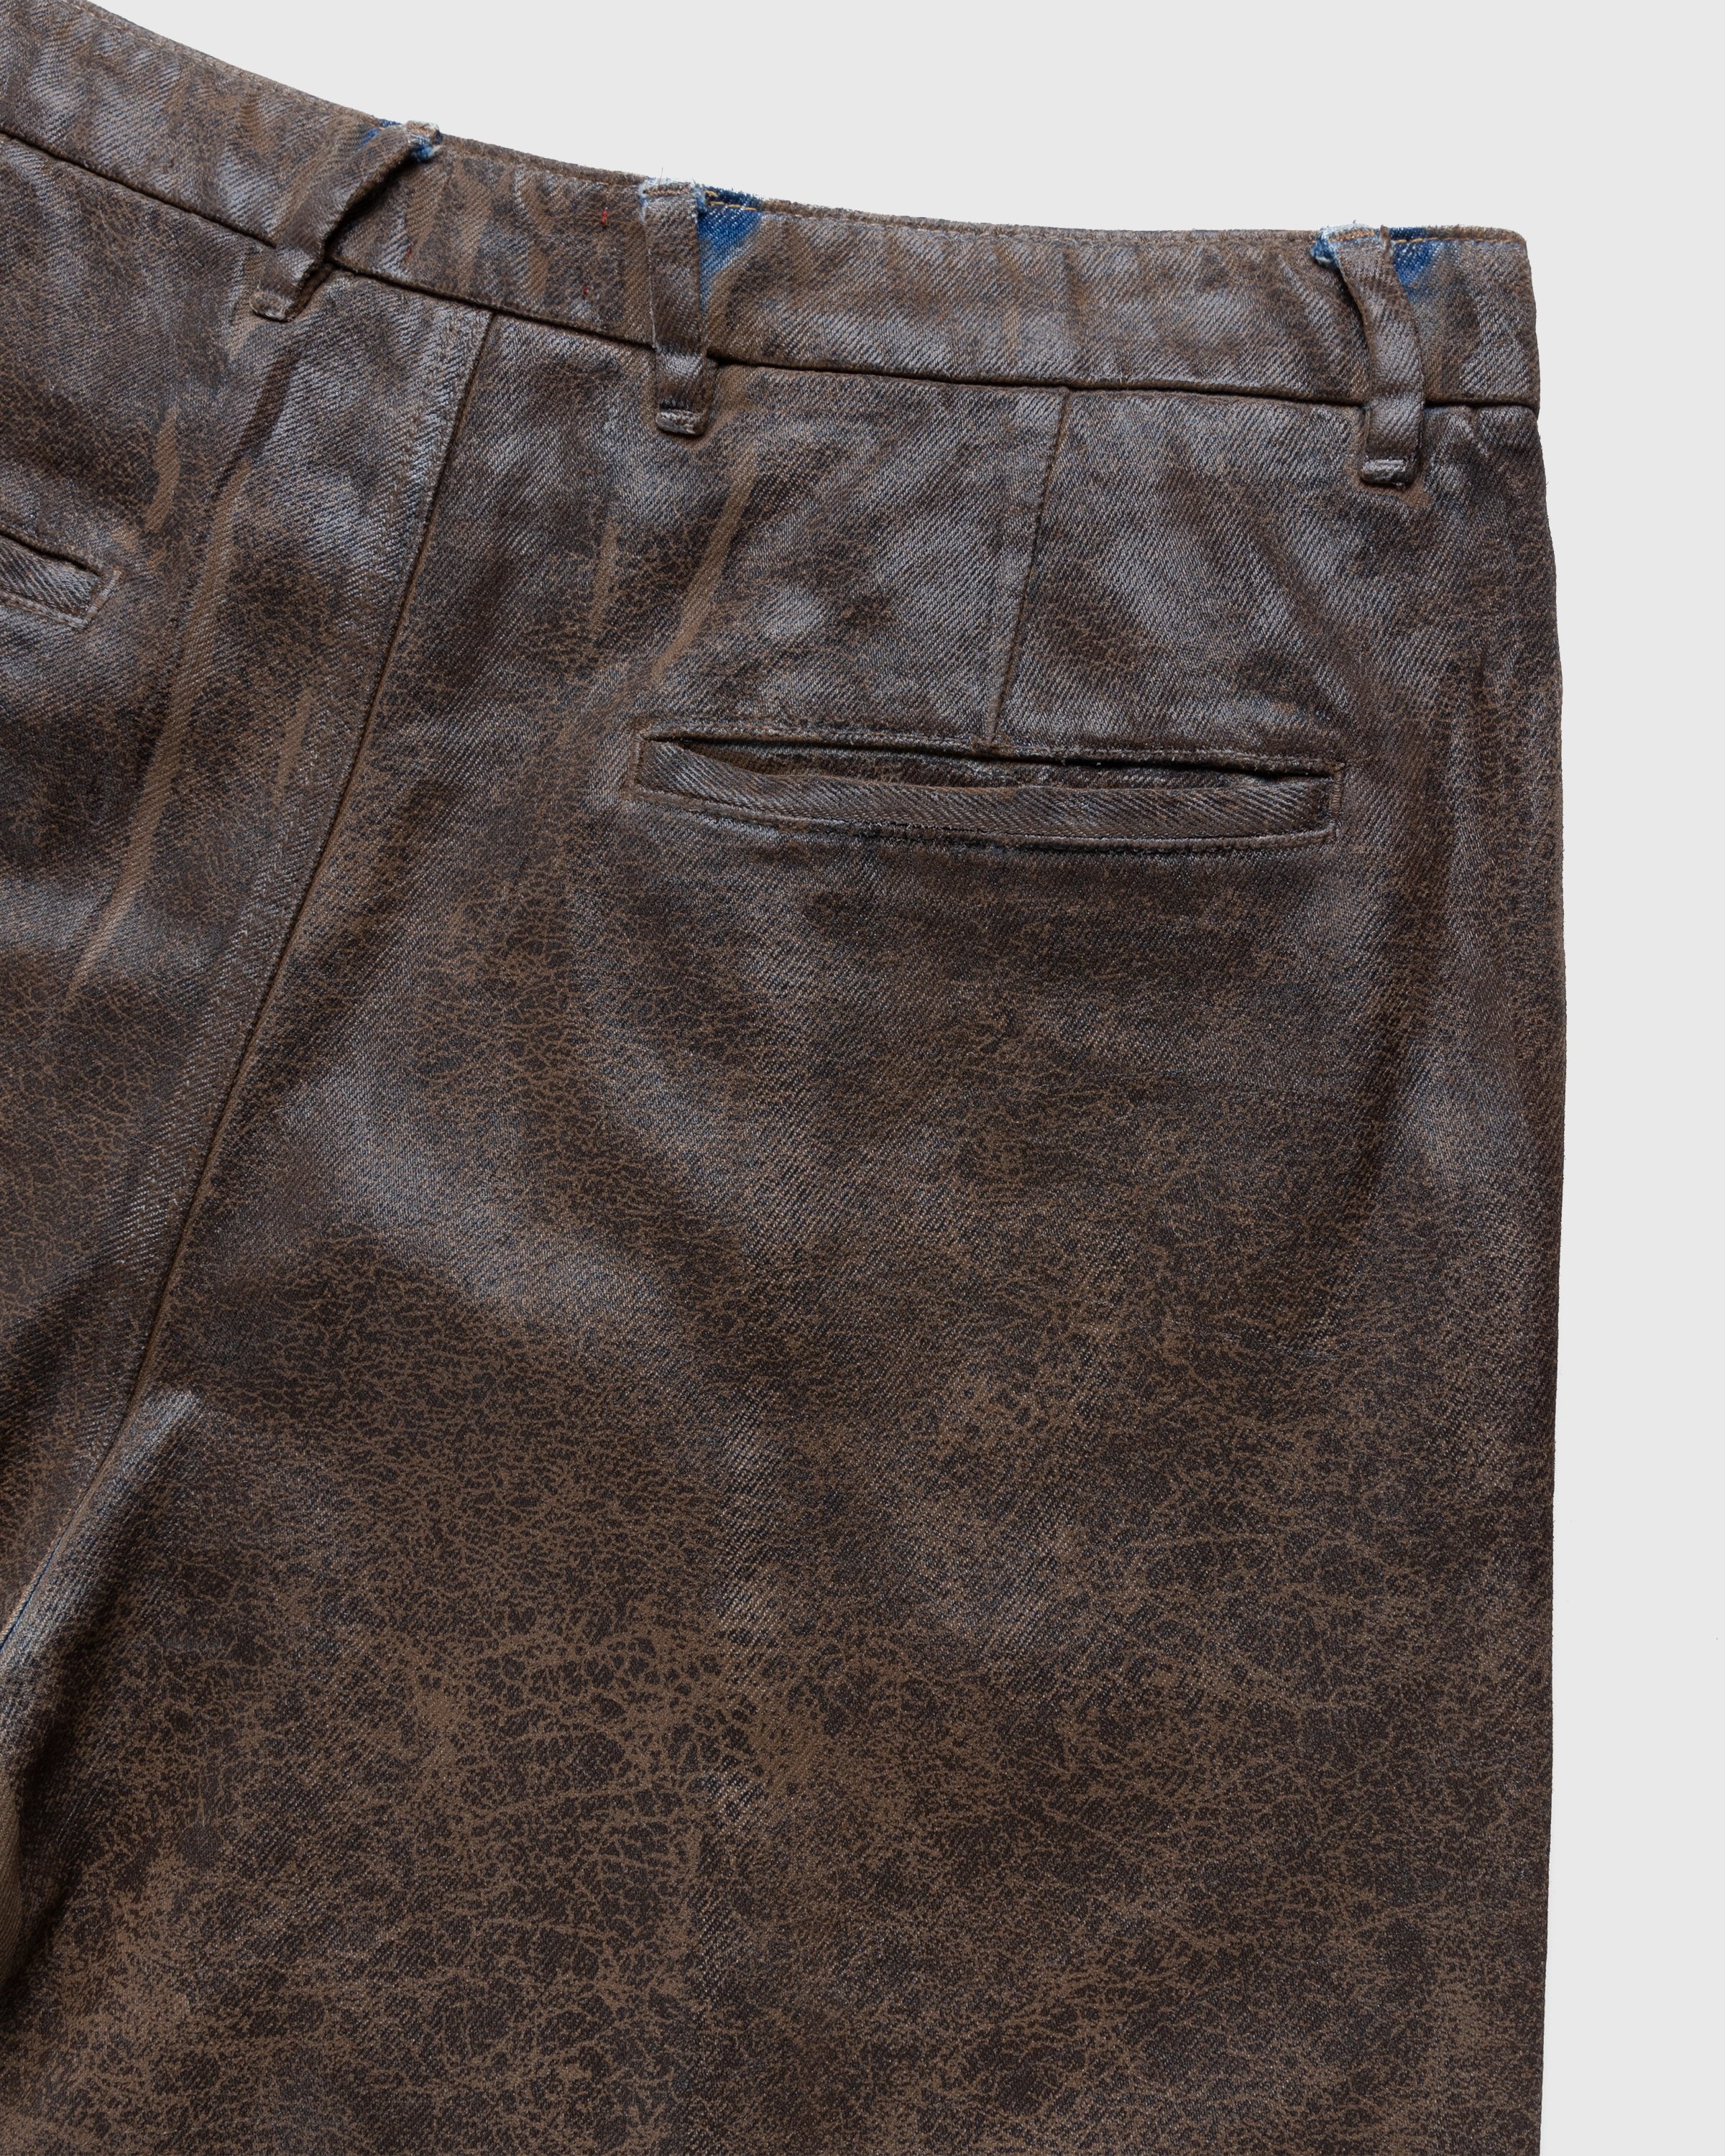 Diesel – Chino Work Jeans Aztec - Pants - Beige - Image 5